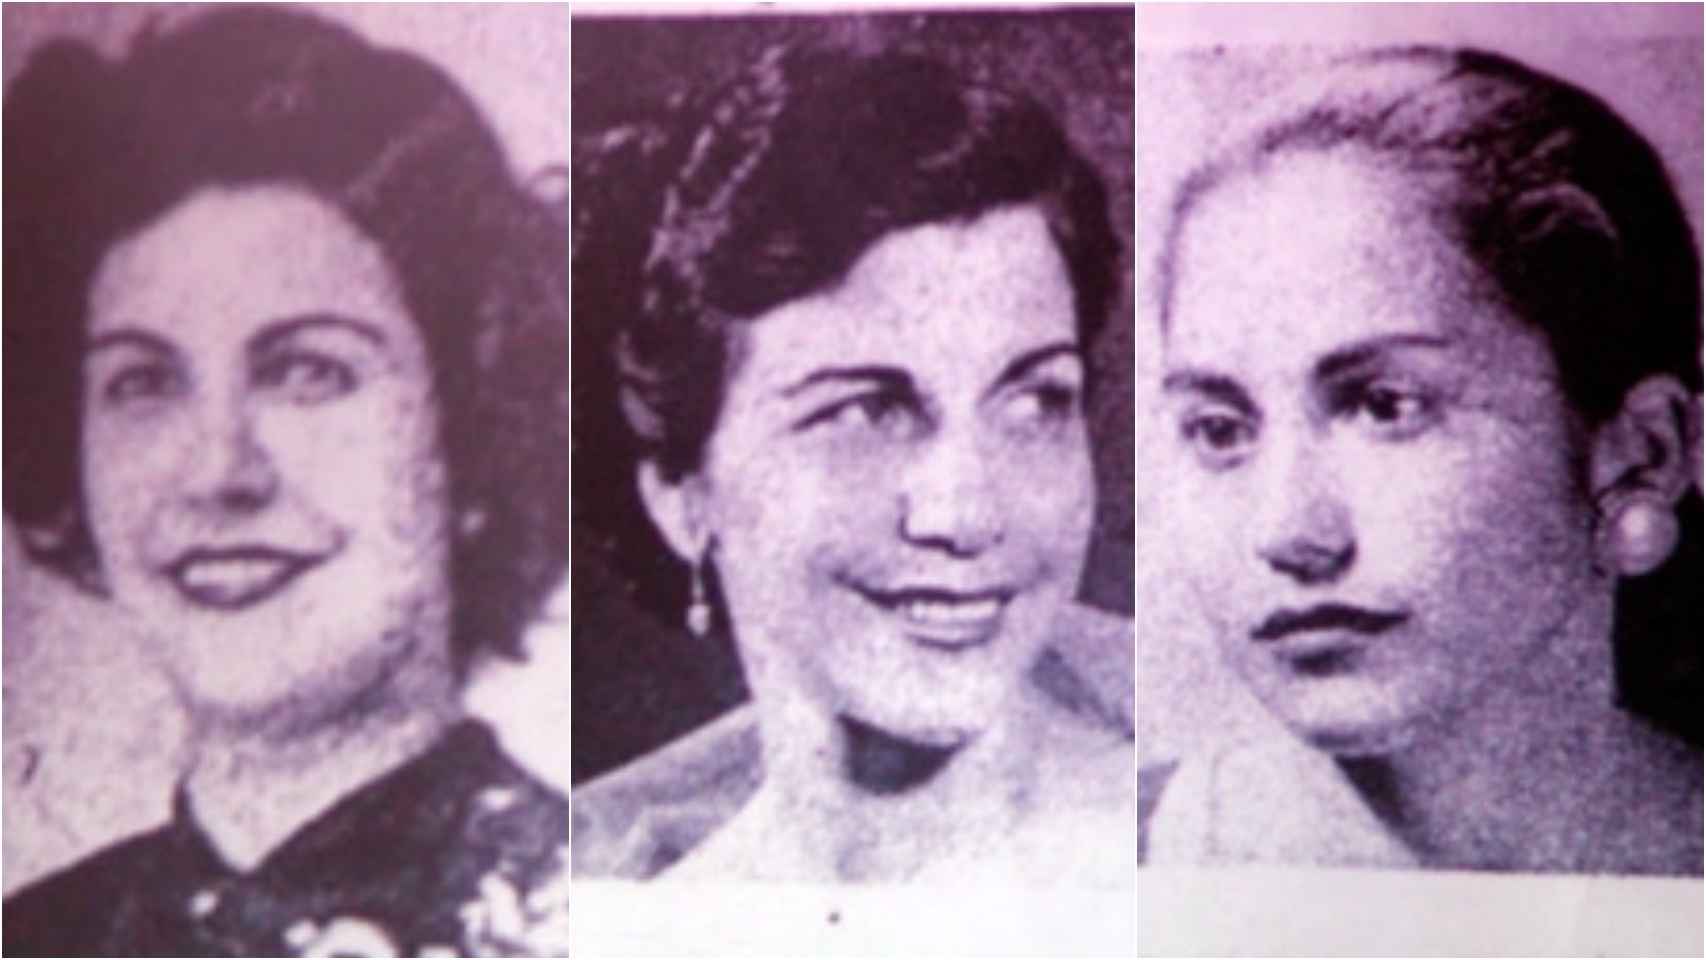 Por orden: Patria, Minerva y María Teresa Mirabal. 'Las Mariposas' asesinadas en 1960 por Trujillo.